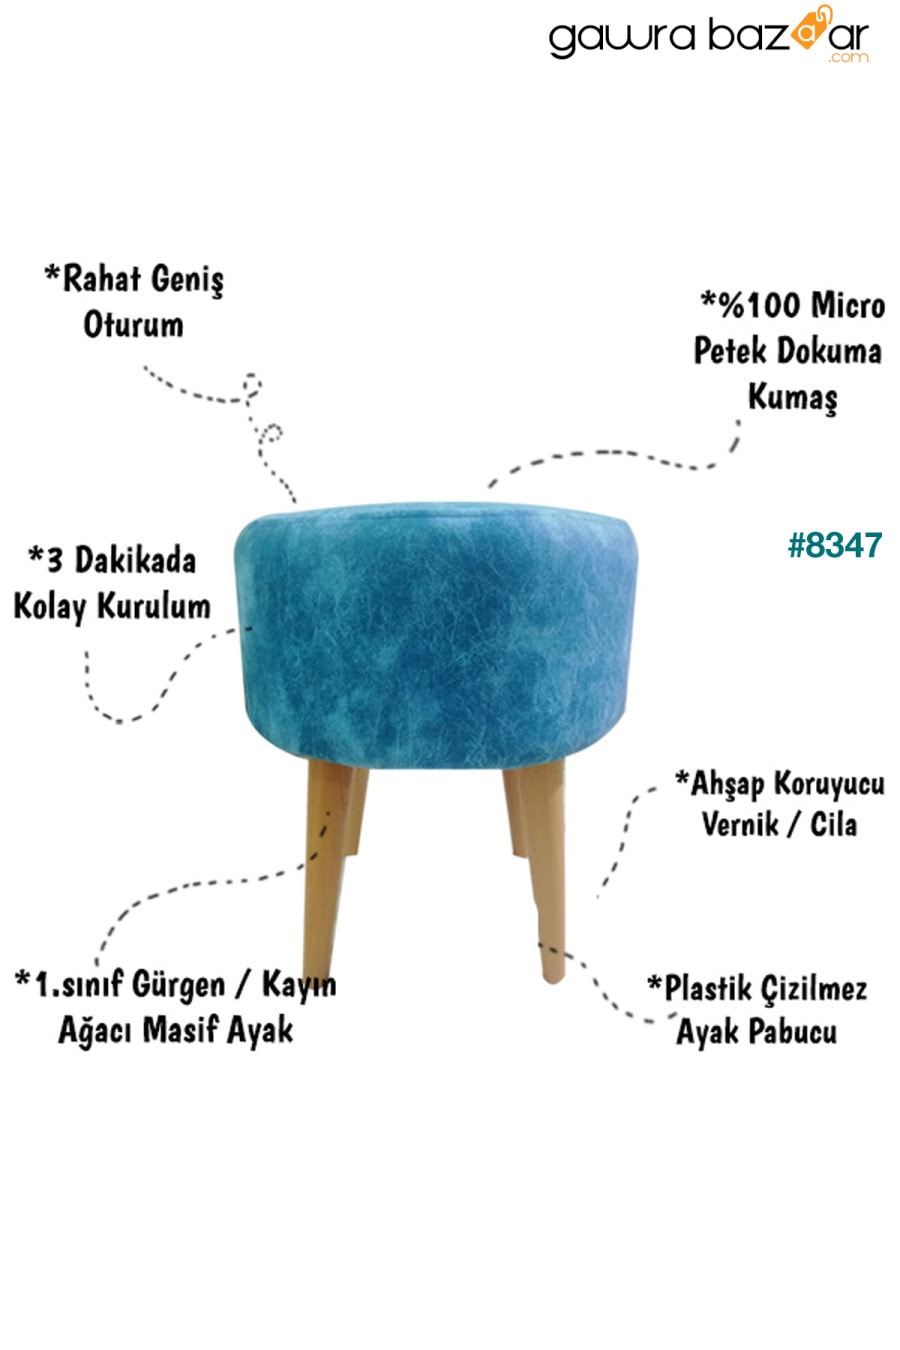 أريكة Etna Fix (4 أرجل) مريحة ومتعددة الأغراض مع أرجل من شعاع البوق الطبيعي باللون الأزرق PufyHome 7